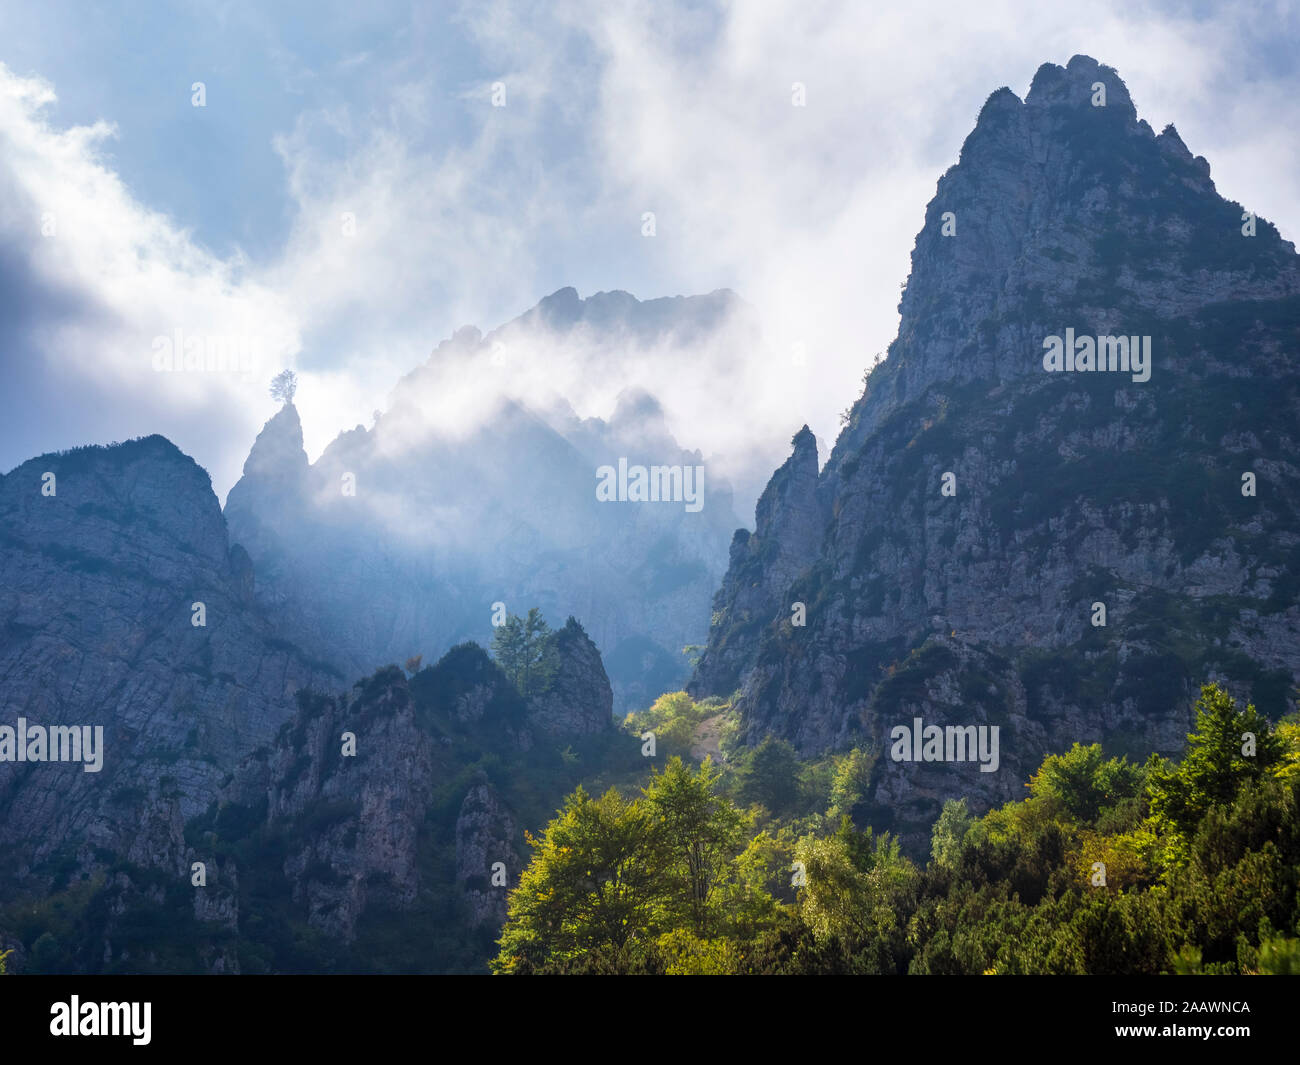 Foggy mountains at Recoaro Terme, Veneto, Italy Stock Photo